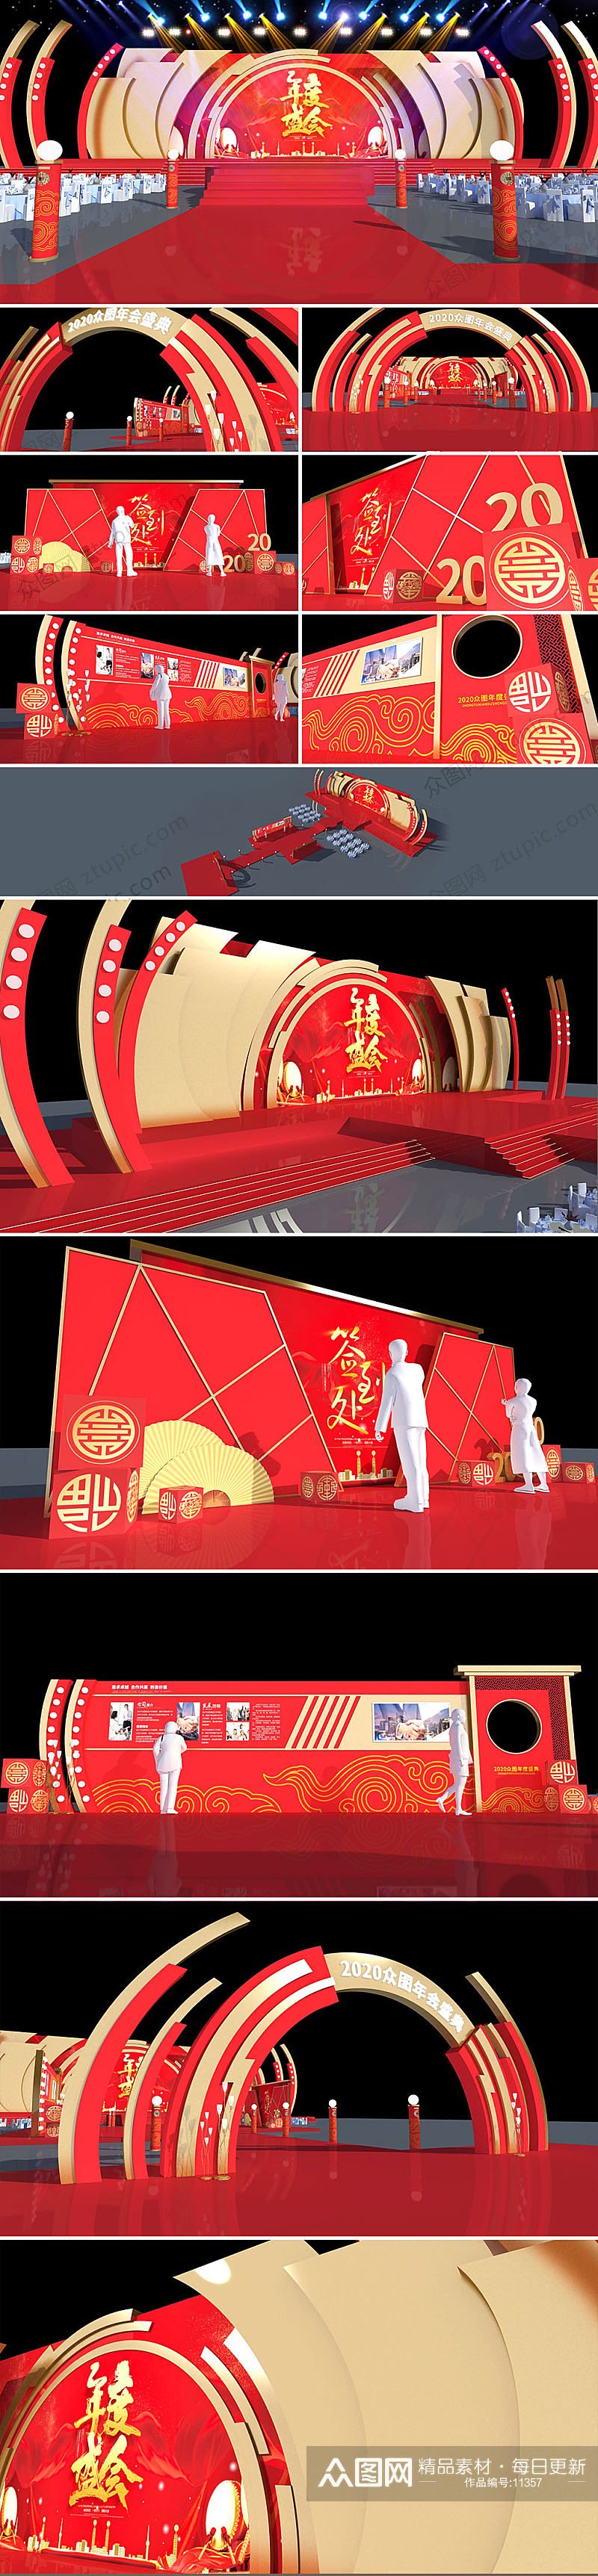 中国红年会布置舞美设计年会美陈素材